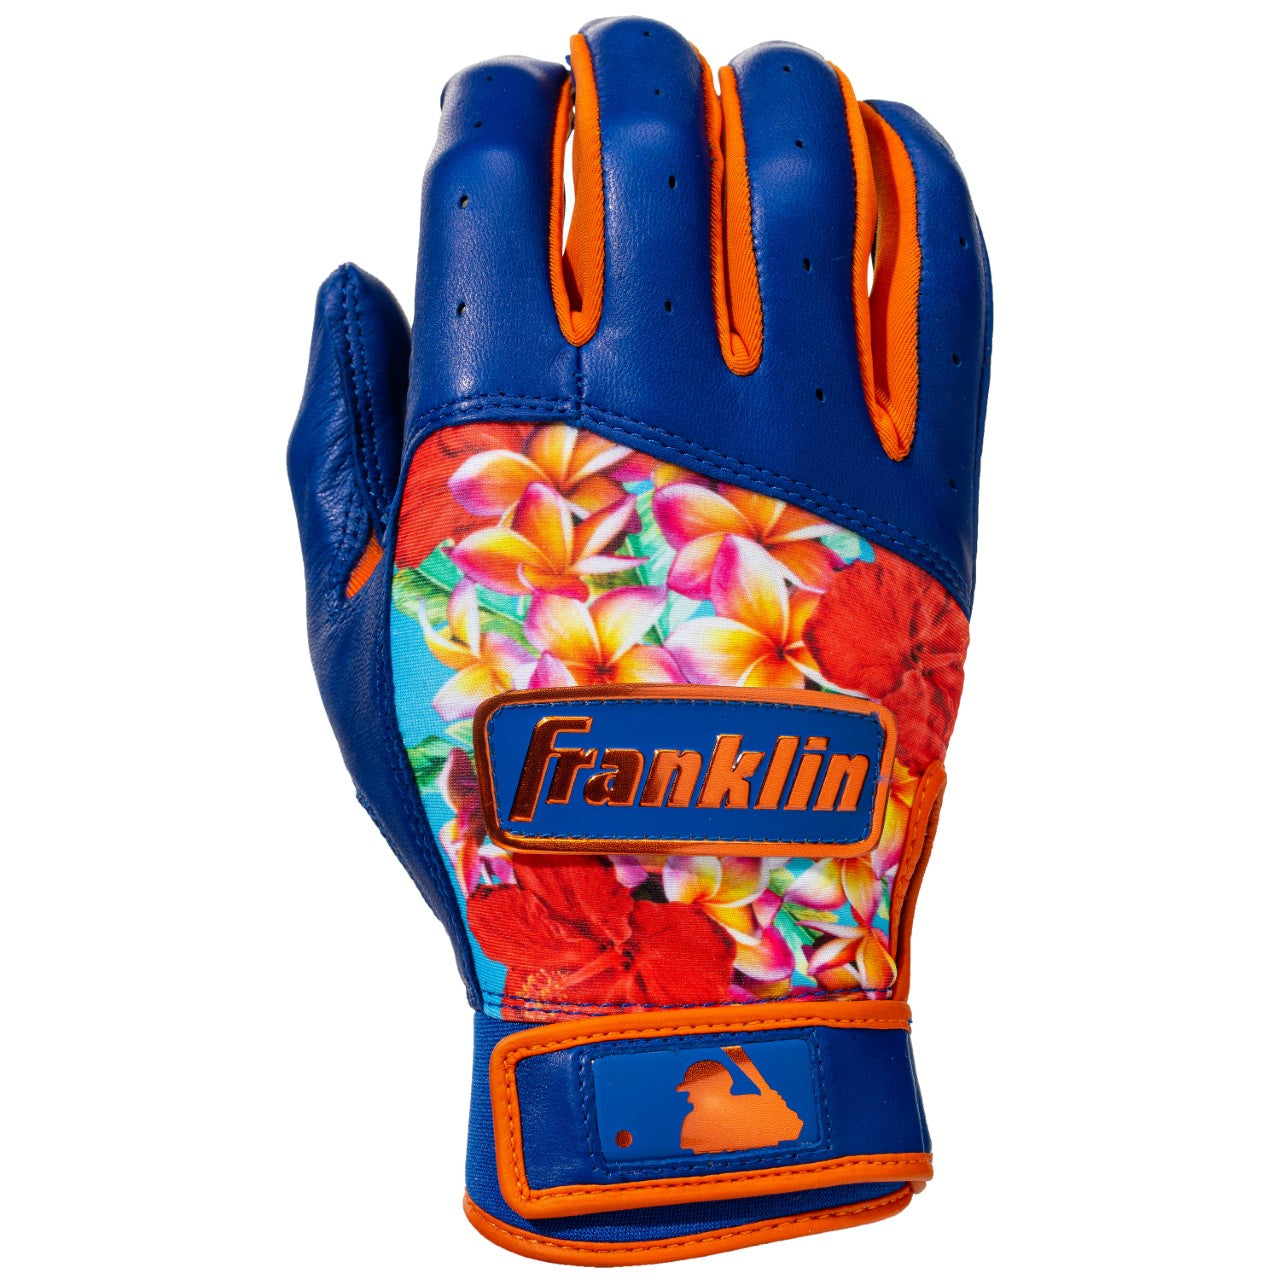 Franklin LINDOR Pro Classic Batting Gloves - Adult - Royal/Floral